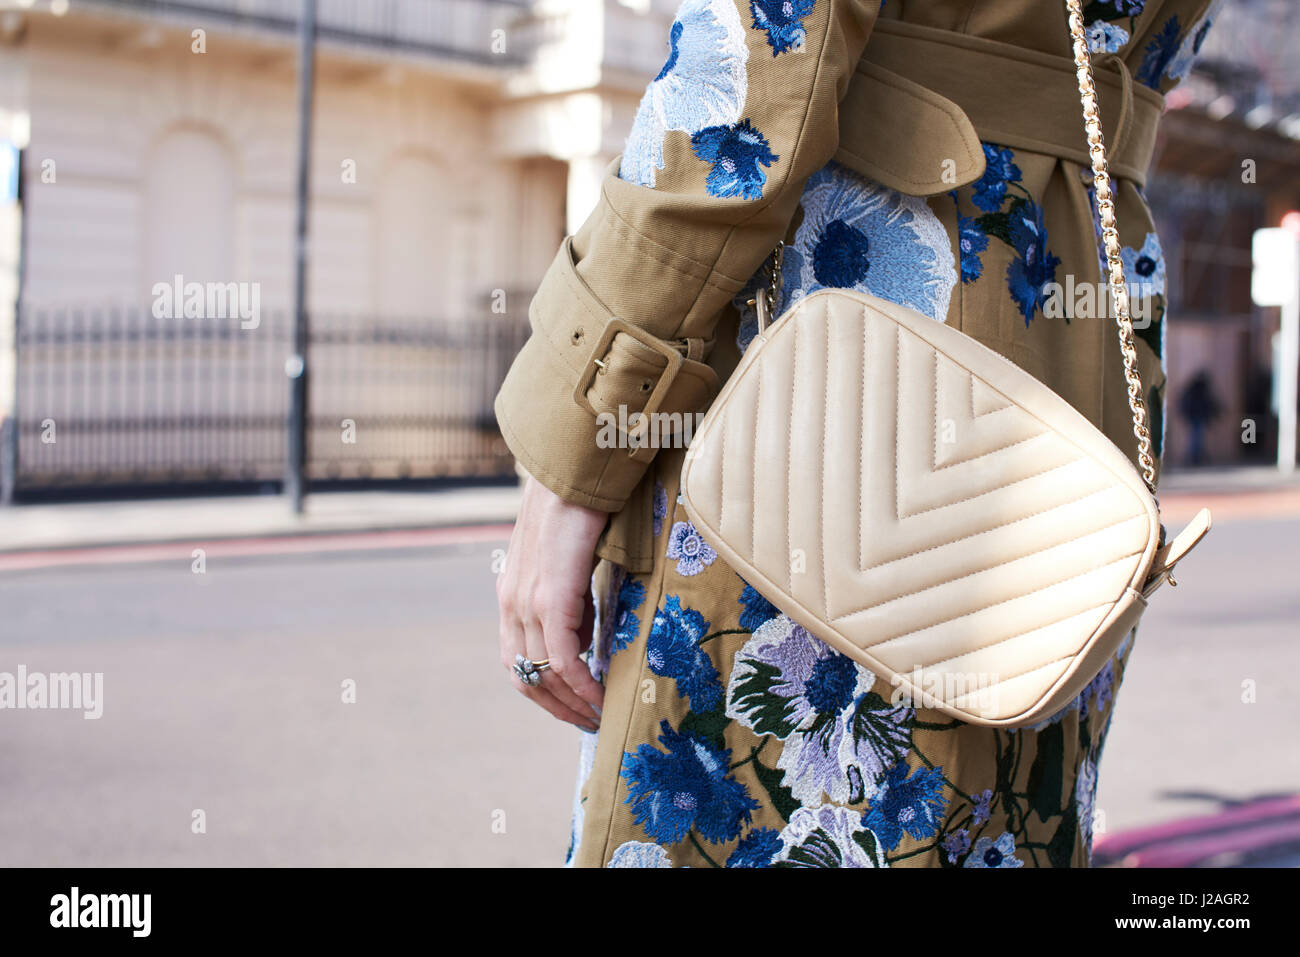 Londres - Febrero, 2017: sección intermedia de mujer vestidos de blanco Chanel bolsos y cuerpo cruz untar con decoración floral en la calle durante la Semana de la Moda de Londres Foto de stock